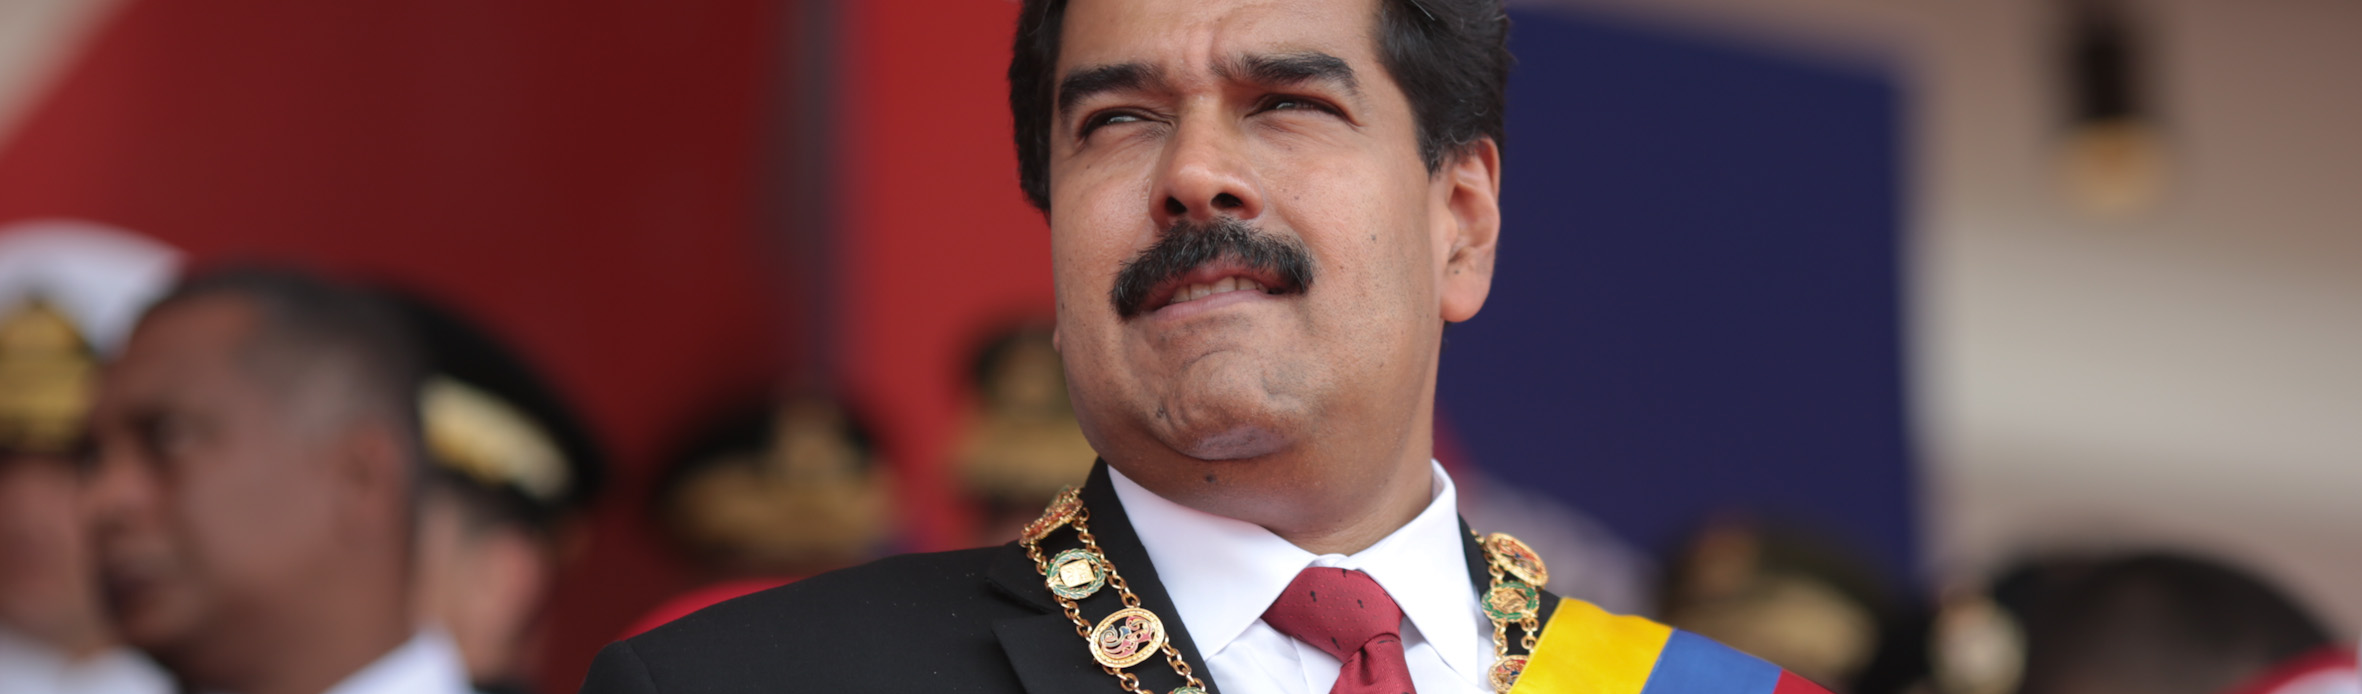 Diálogo entre Maduro e oposição pode acabar com sanções e violentas tentativas de golpe